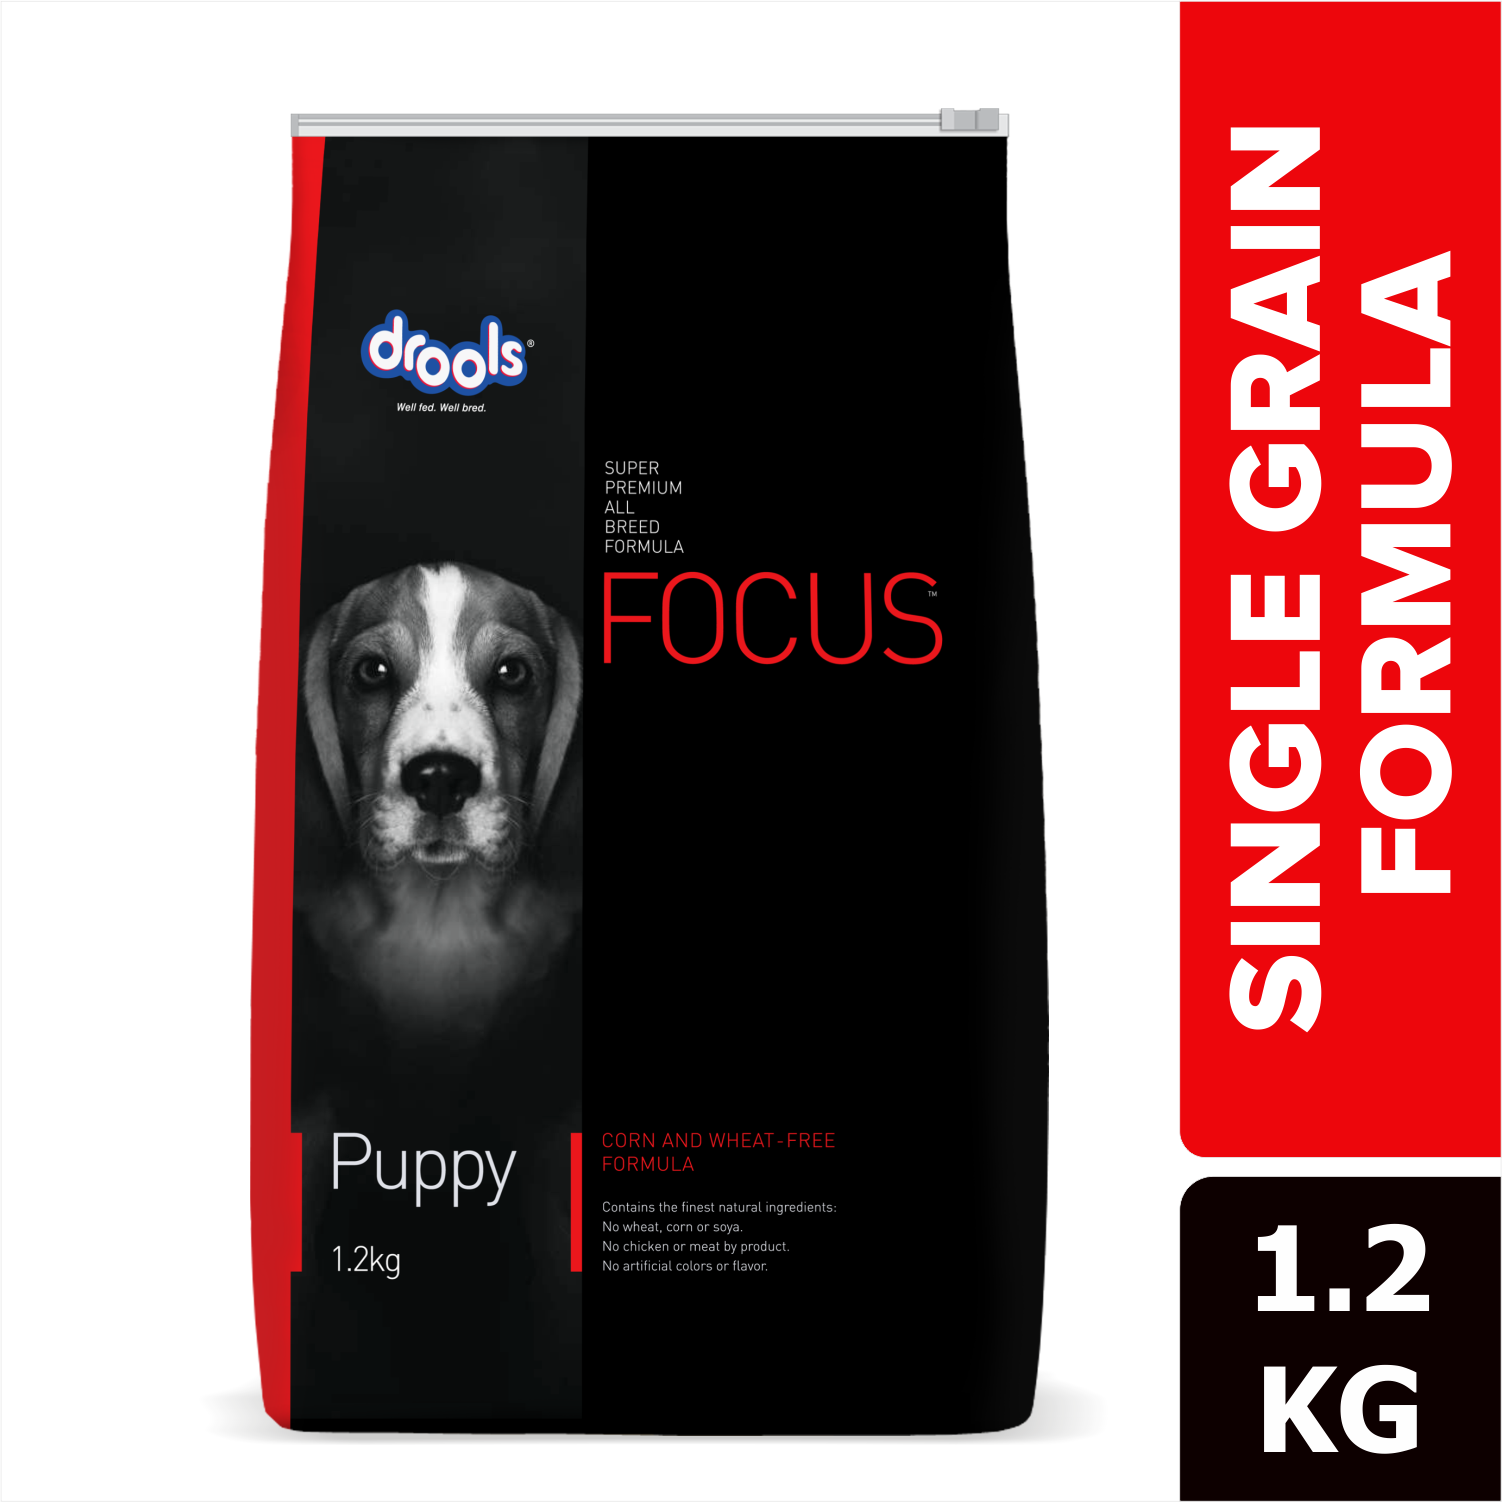 Drools Focus Super Premium Puppy Dry Food